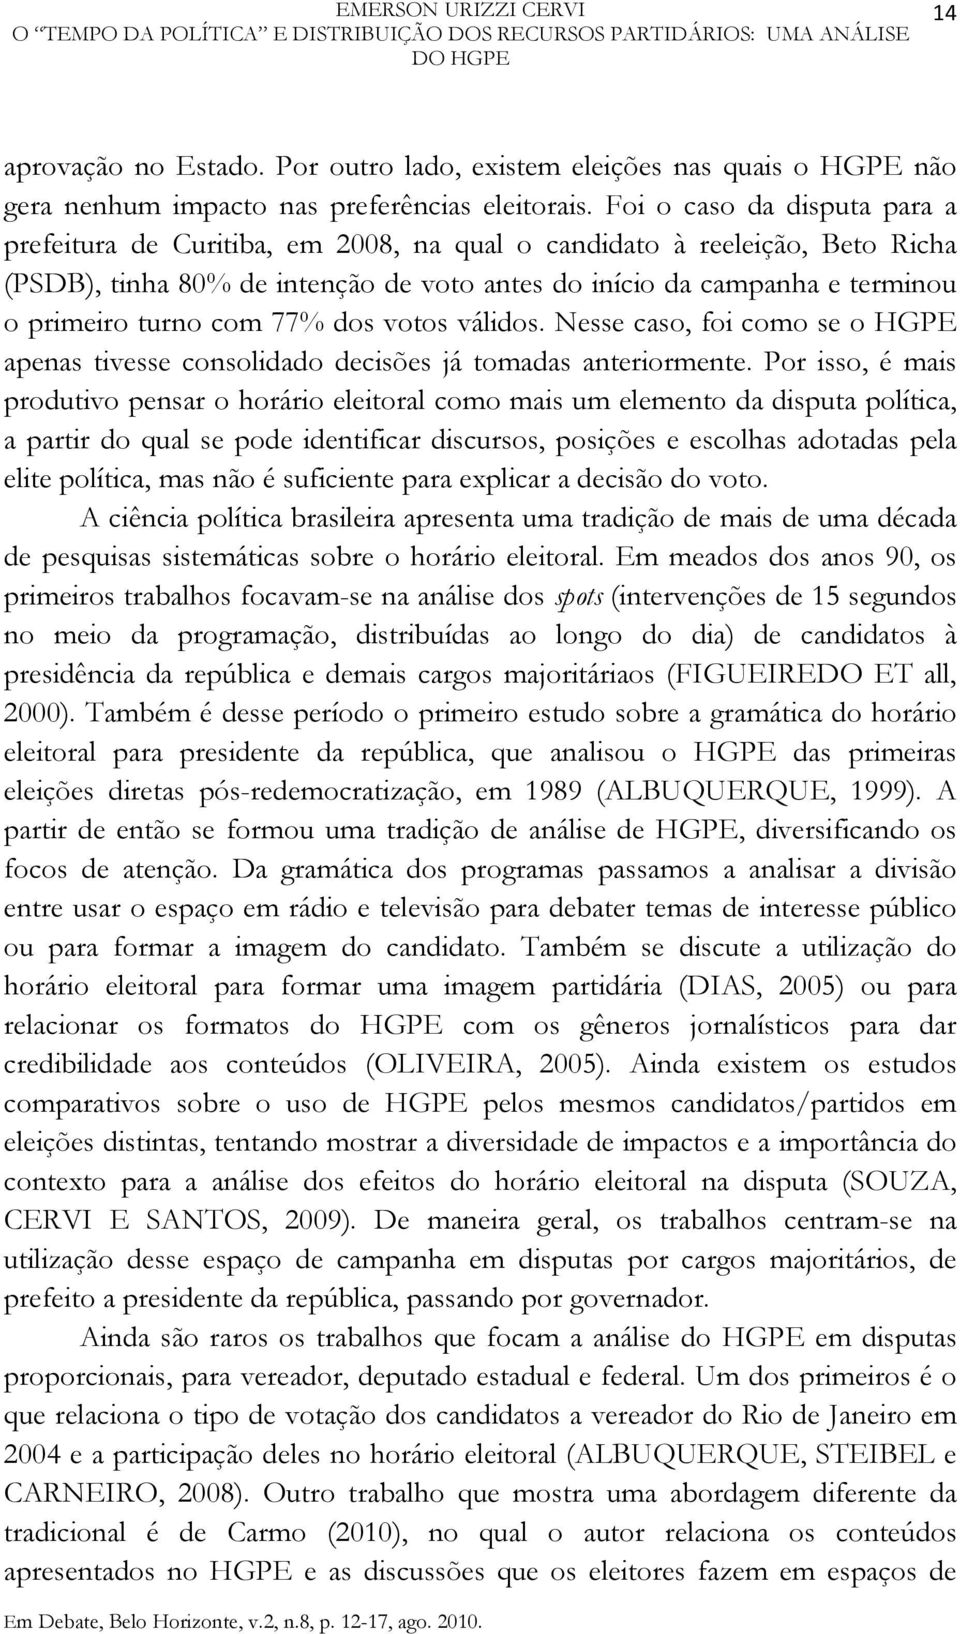 Foi o caso da disputa para a prefeitura de Curitiba, em 2008, na qual o candidato à reeleição, Beto Richa (PSDB), tinha 80% de intenção de voto antes do início da campanha e terminou o primeiro turno